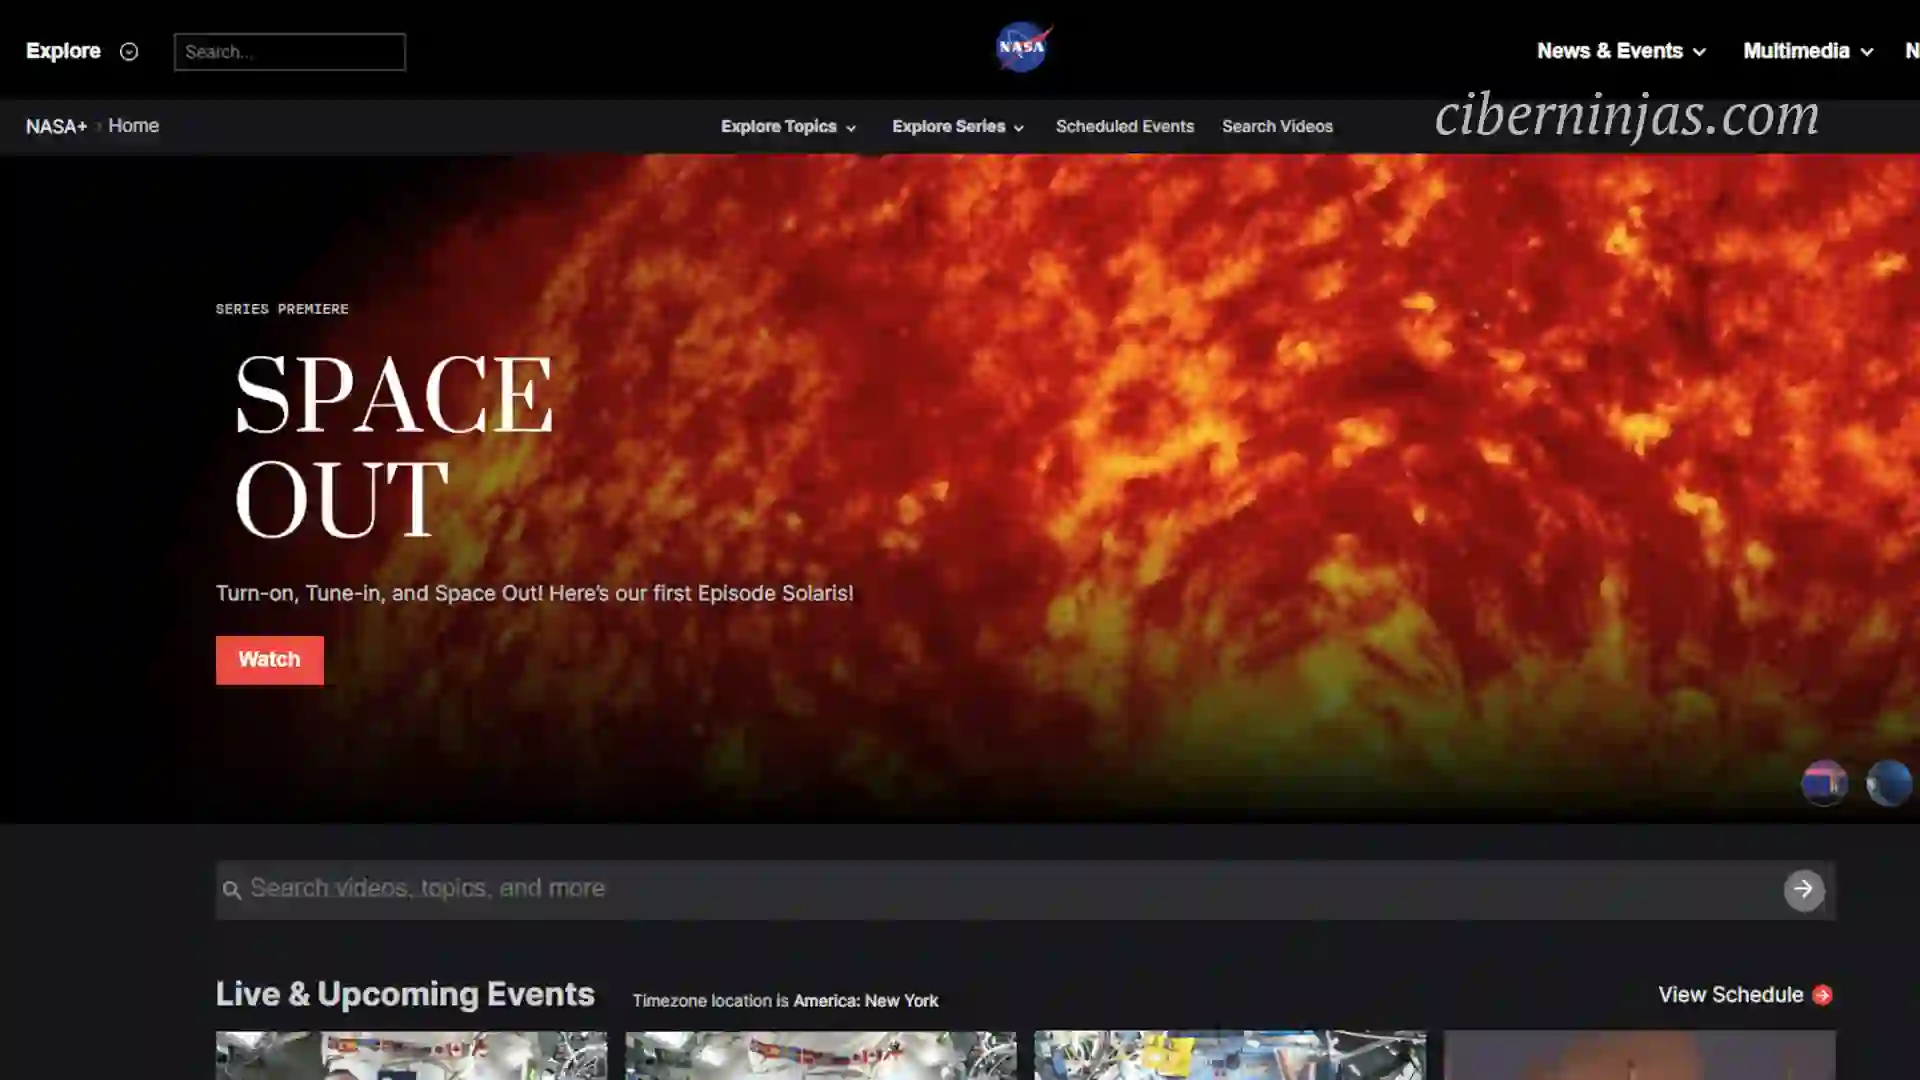 La NASA lanzó un Cine Online Gratuito sobre el Espacio